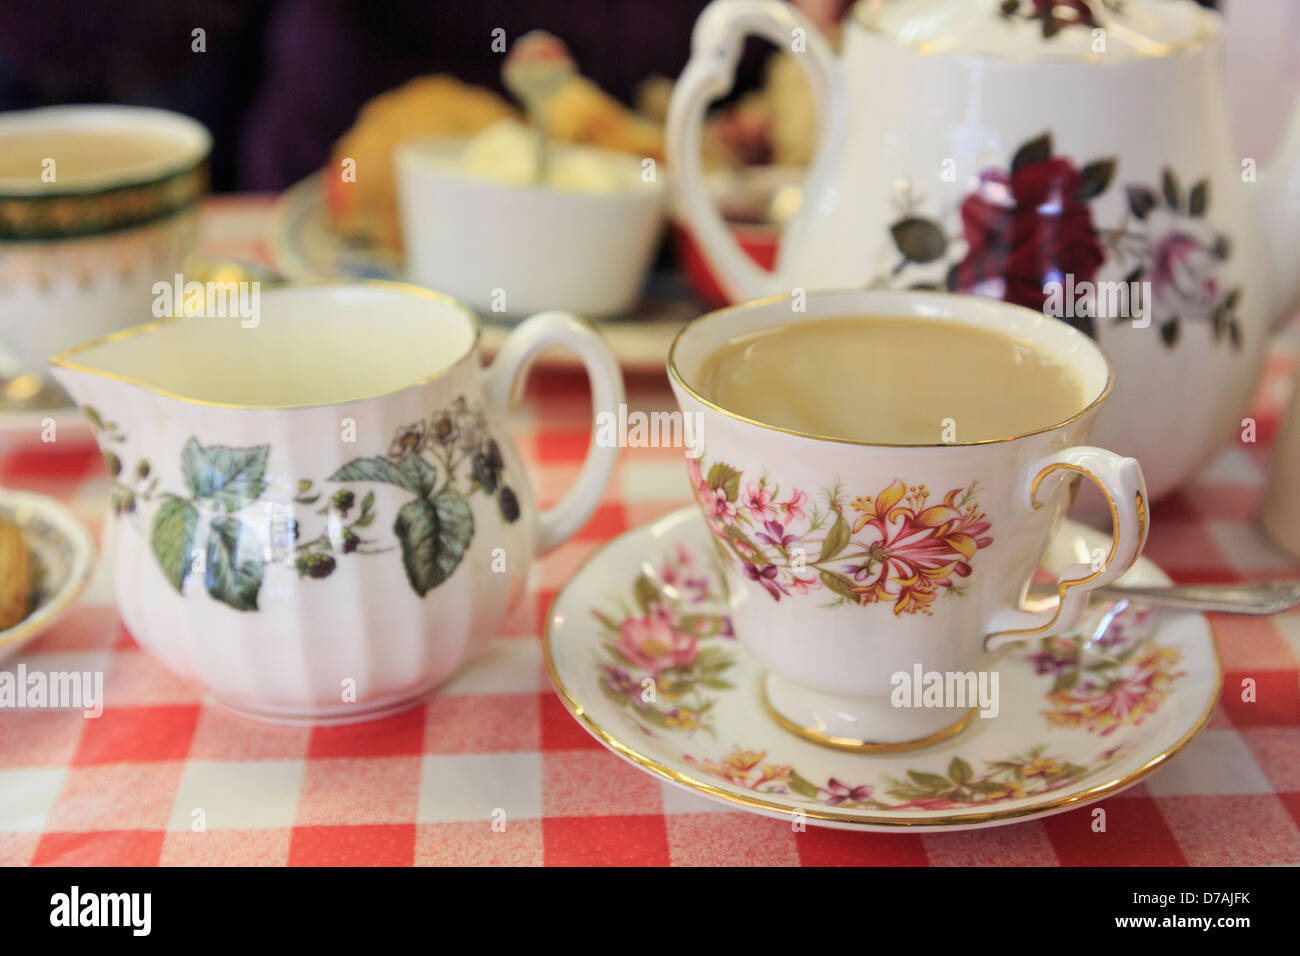 Un tradizionale tè inglese pomeridiano con servizio fiorito di cina tazzina e piattino su una tavola rosso e bianco panno in una caffetteria. Inghilterra Regno Unito Gran Bretagna Foto Stock